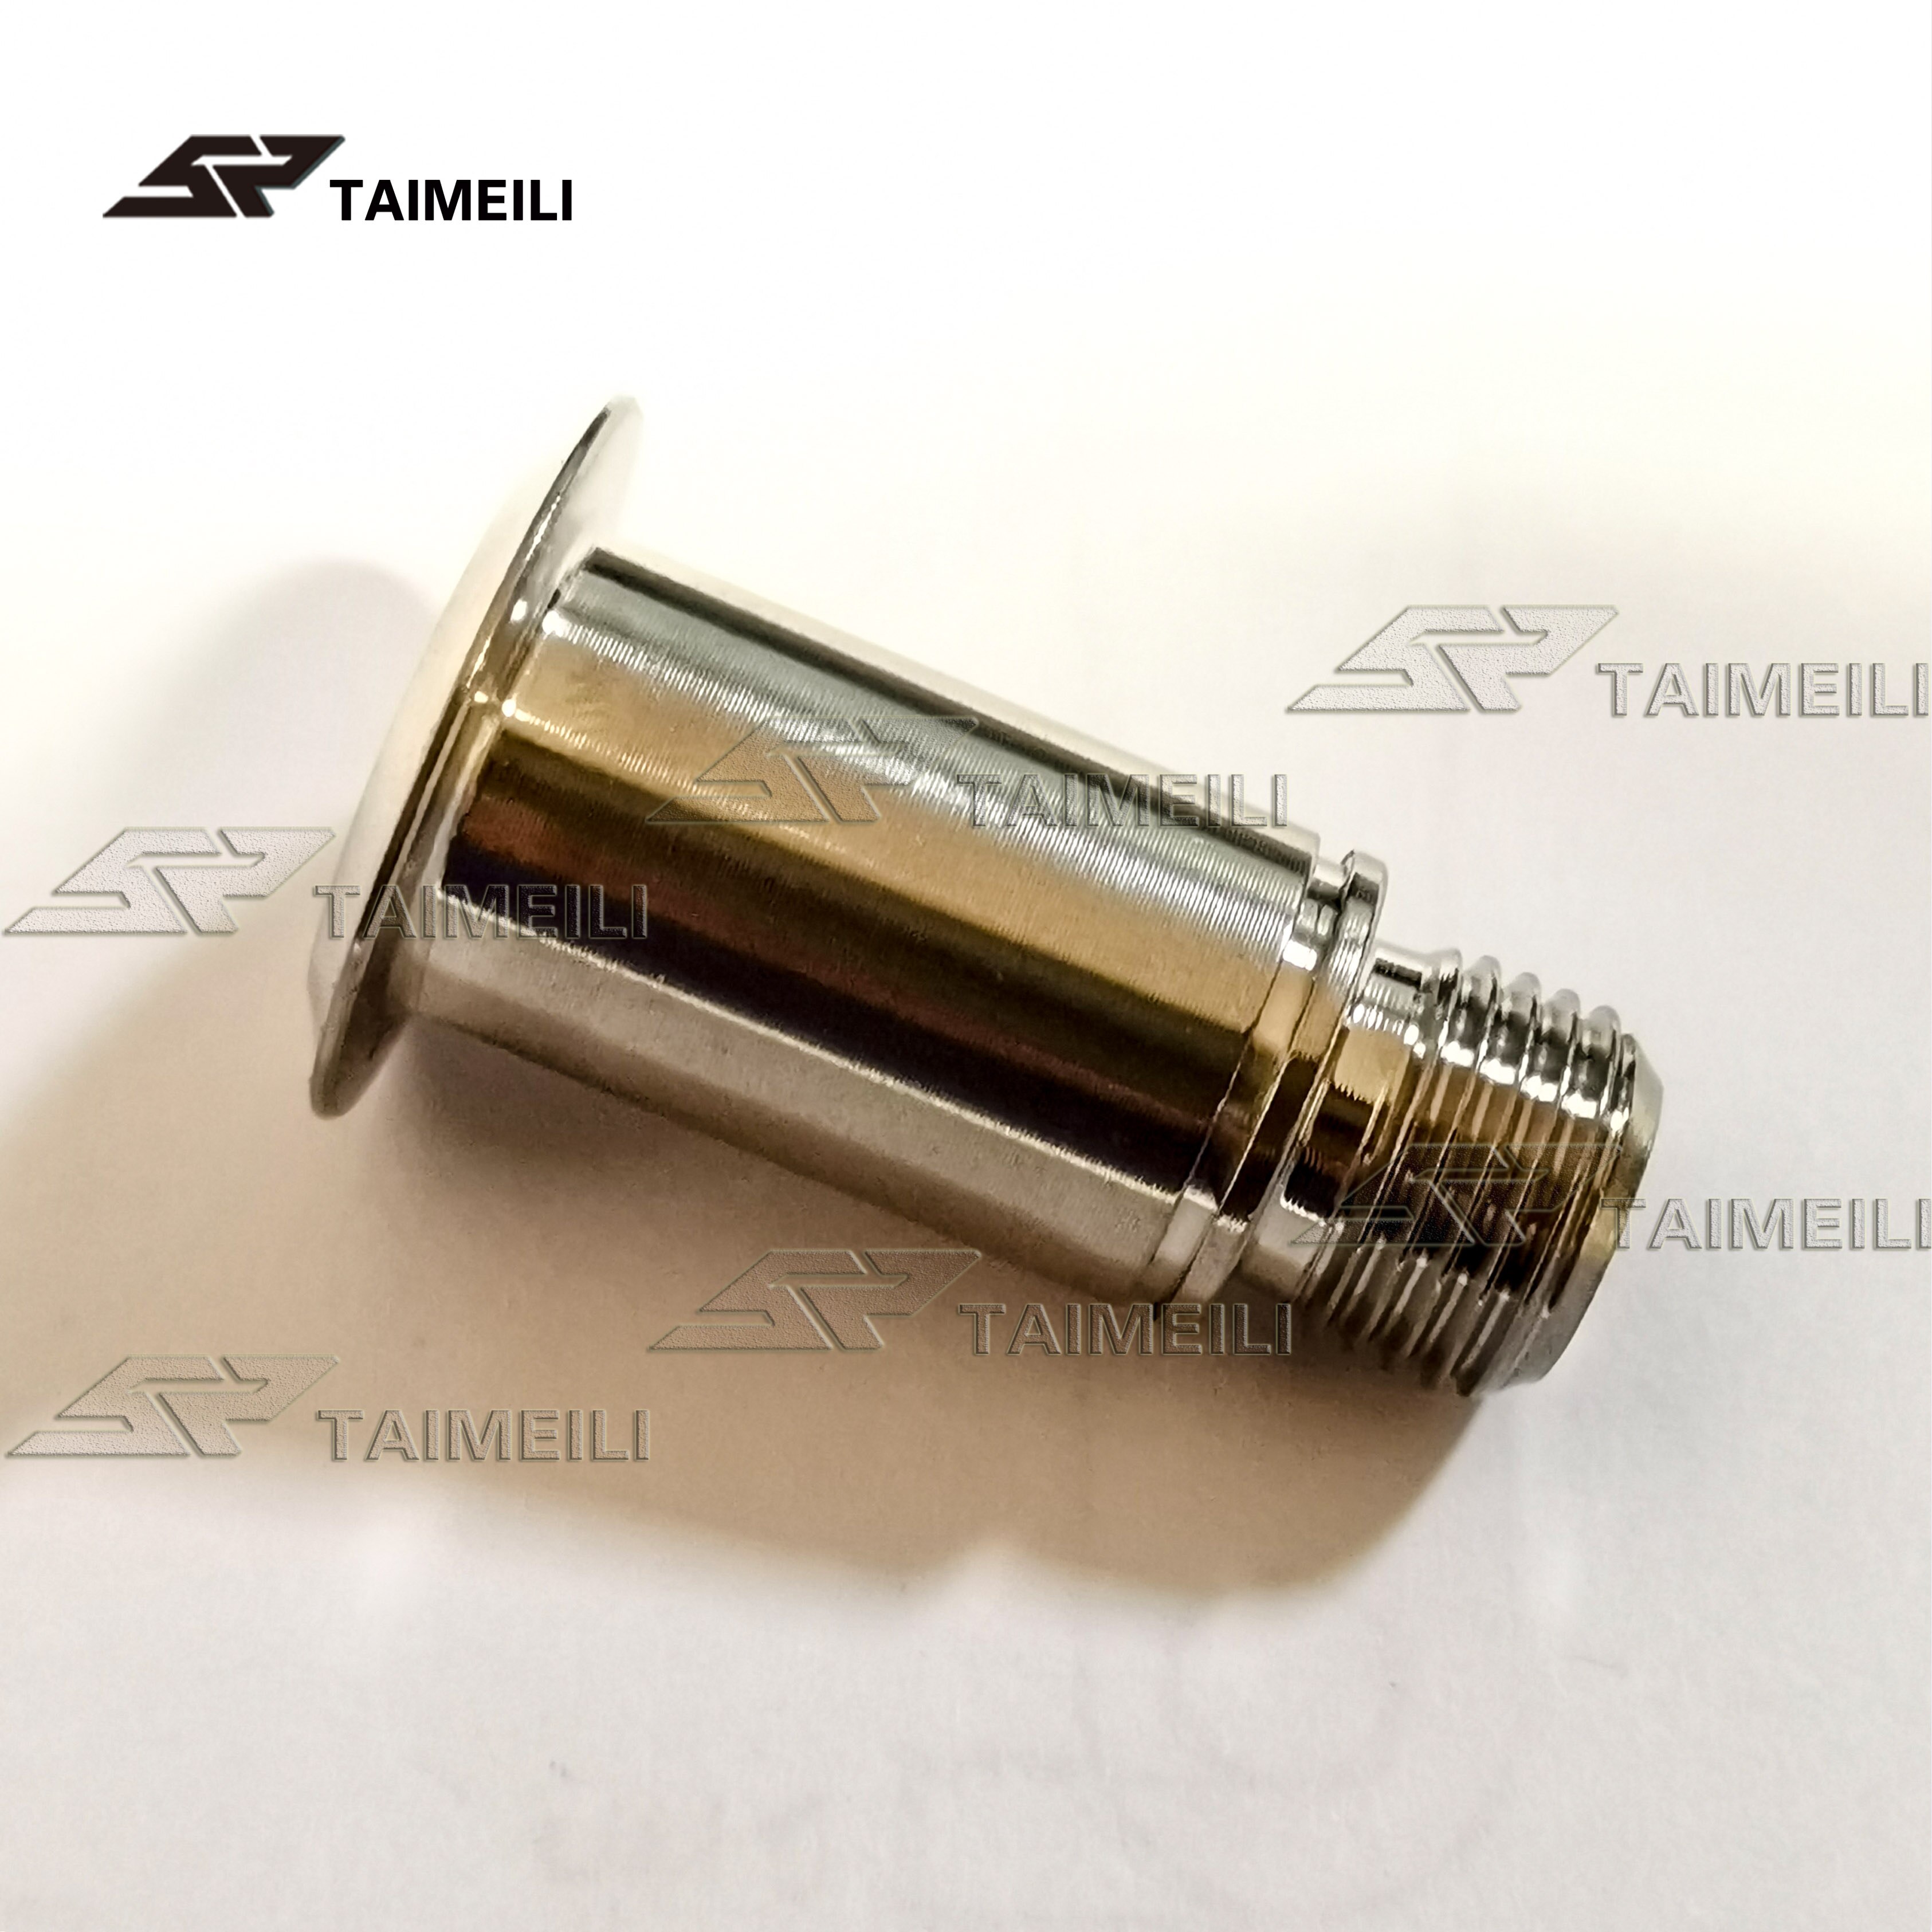 Taimeili sram xo  / x9 x 7gx /  rival 1 skifteraksel fastgørelsesskruer  gr5 titanium skruer patch: Sølv